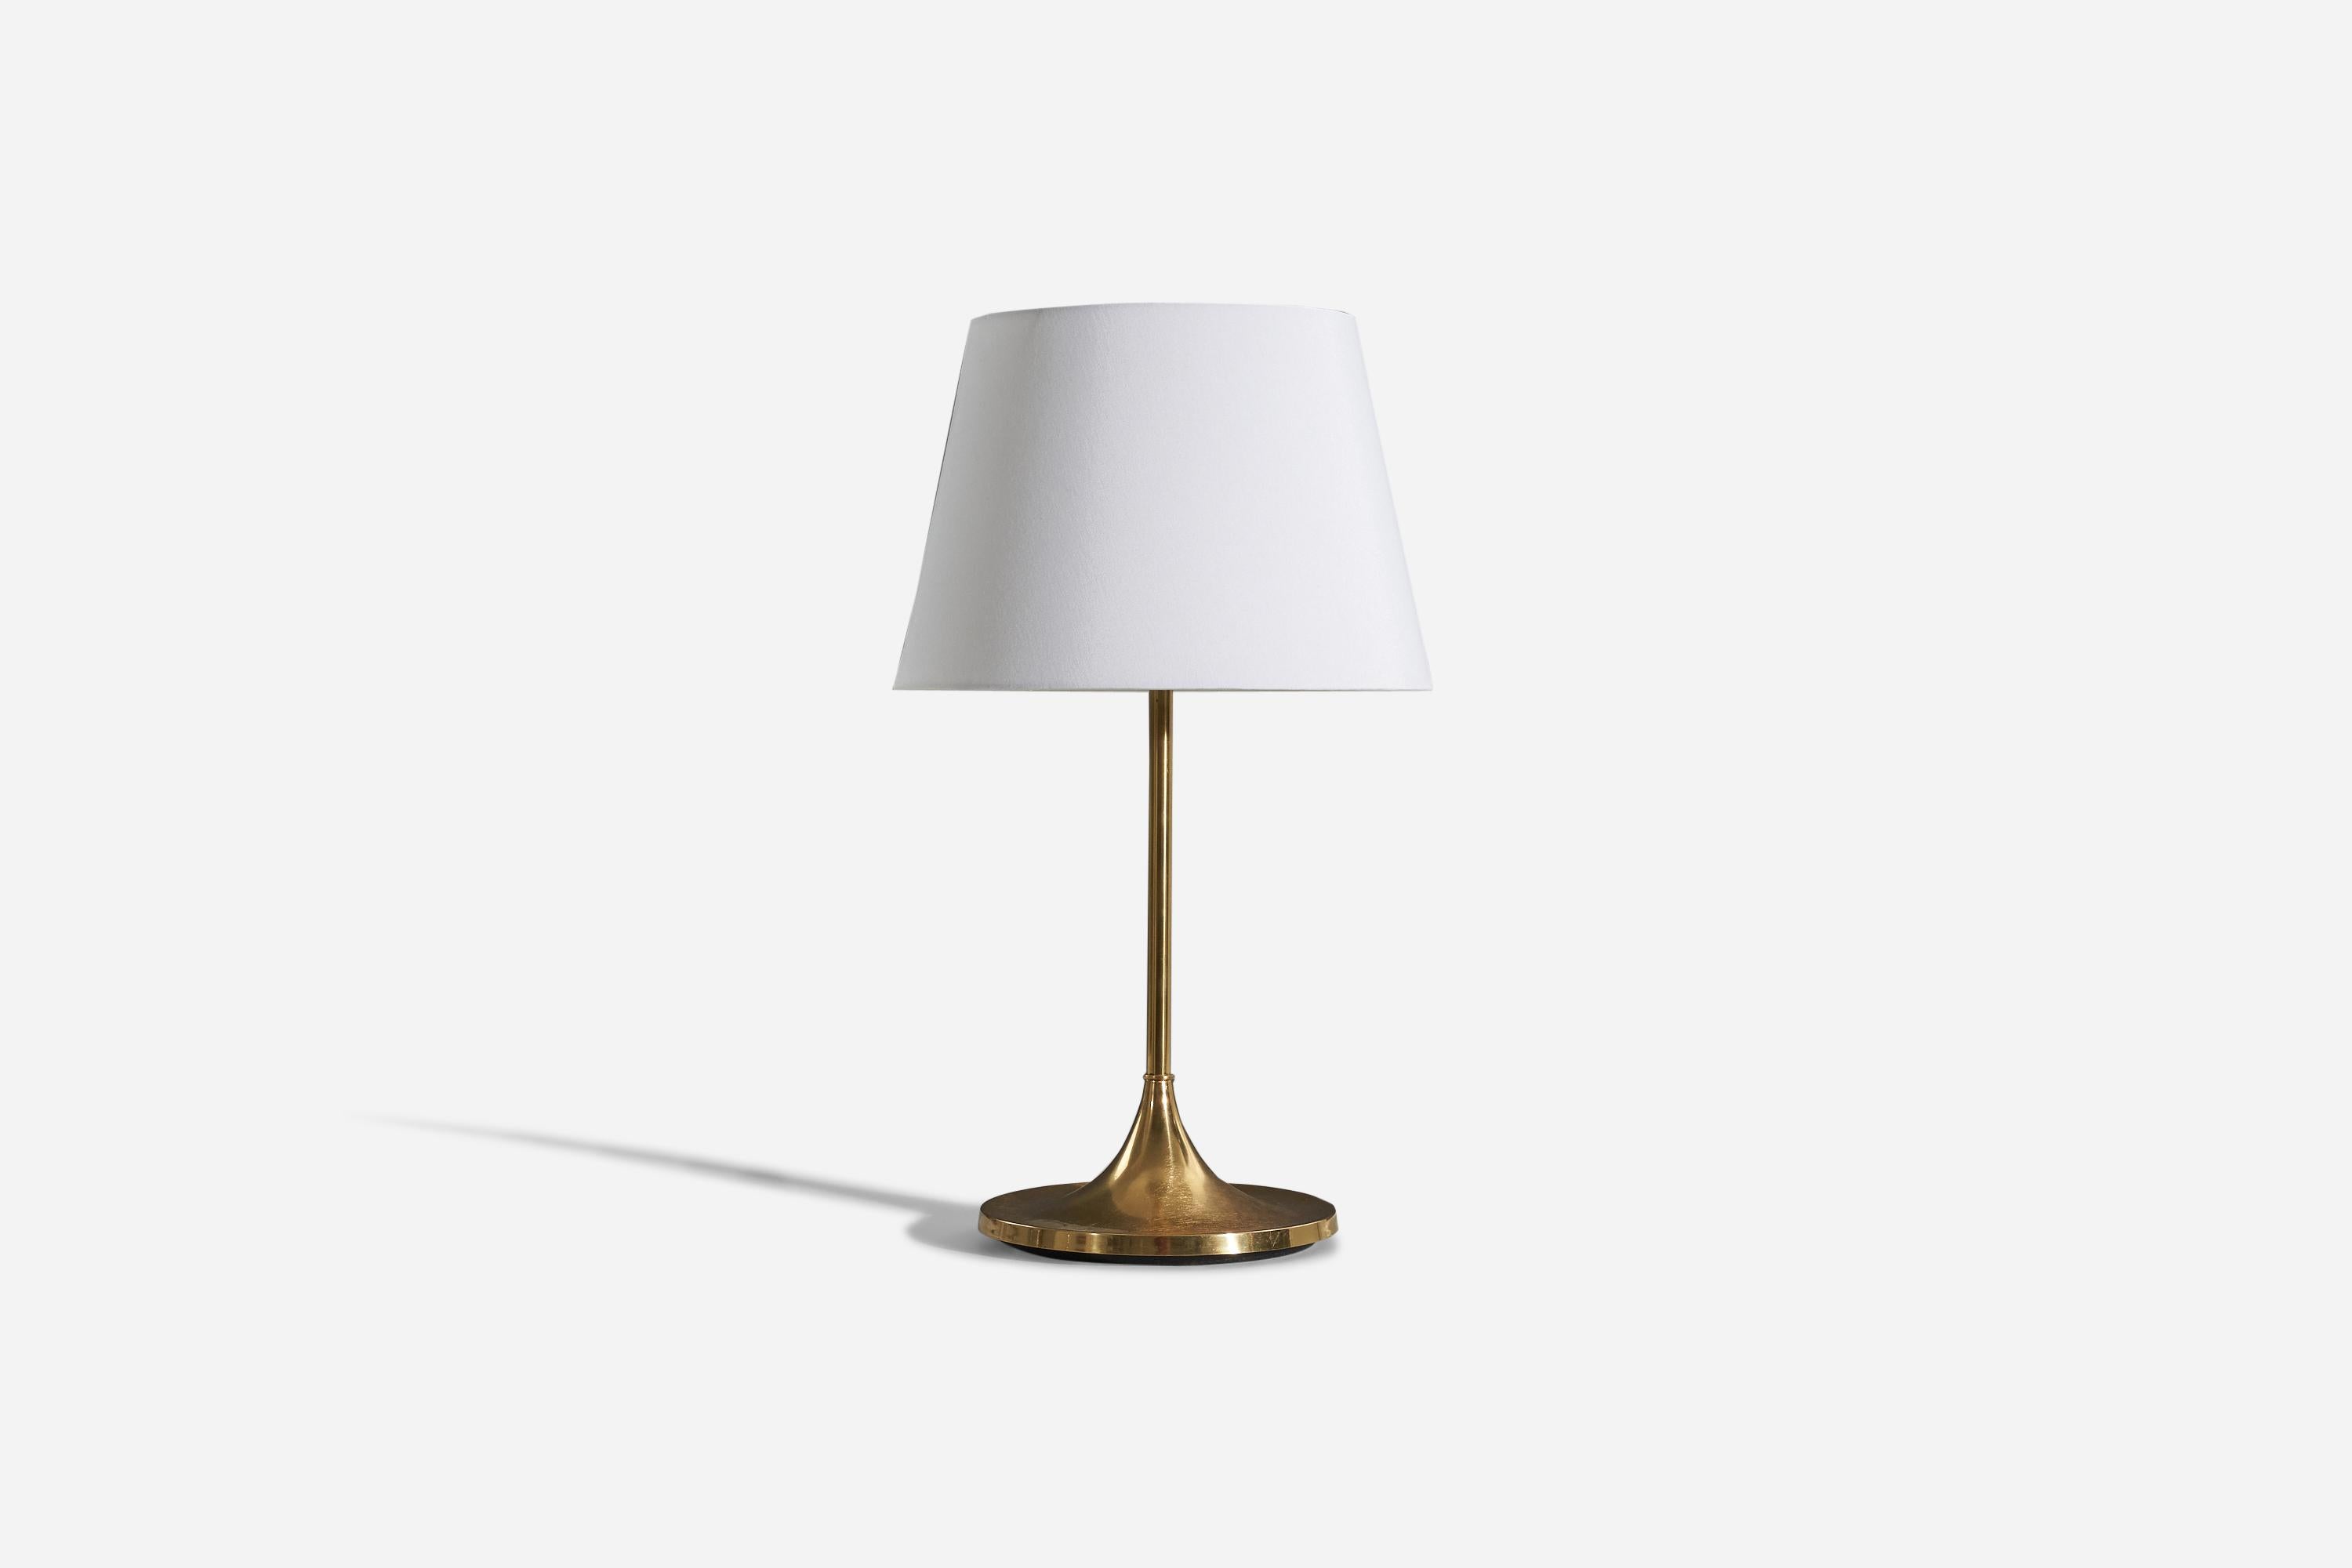 Tischlampe aus Messing, entworfen und hergestellt von einem schwedischen Designer, Schweden, ca. 1960er Jahre.

Verkauft ohne Lampenschirm. 
Abmessungen der Lampe (Zoll) : 18.125 x 9,625 x 9,625 (H x B x T)
Abmessungen des Schirms (Zoll) : 10 x